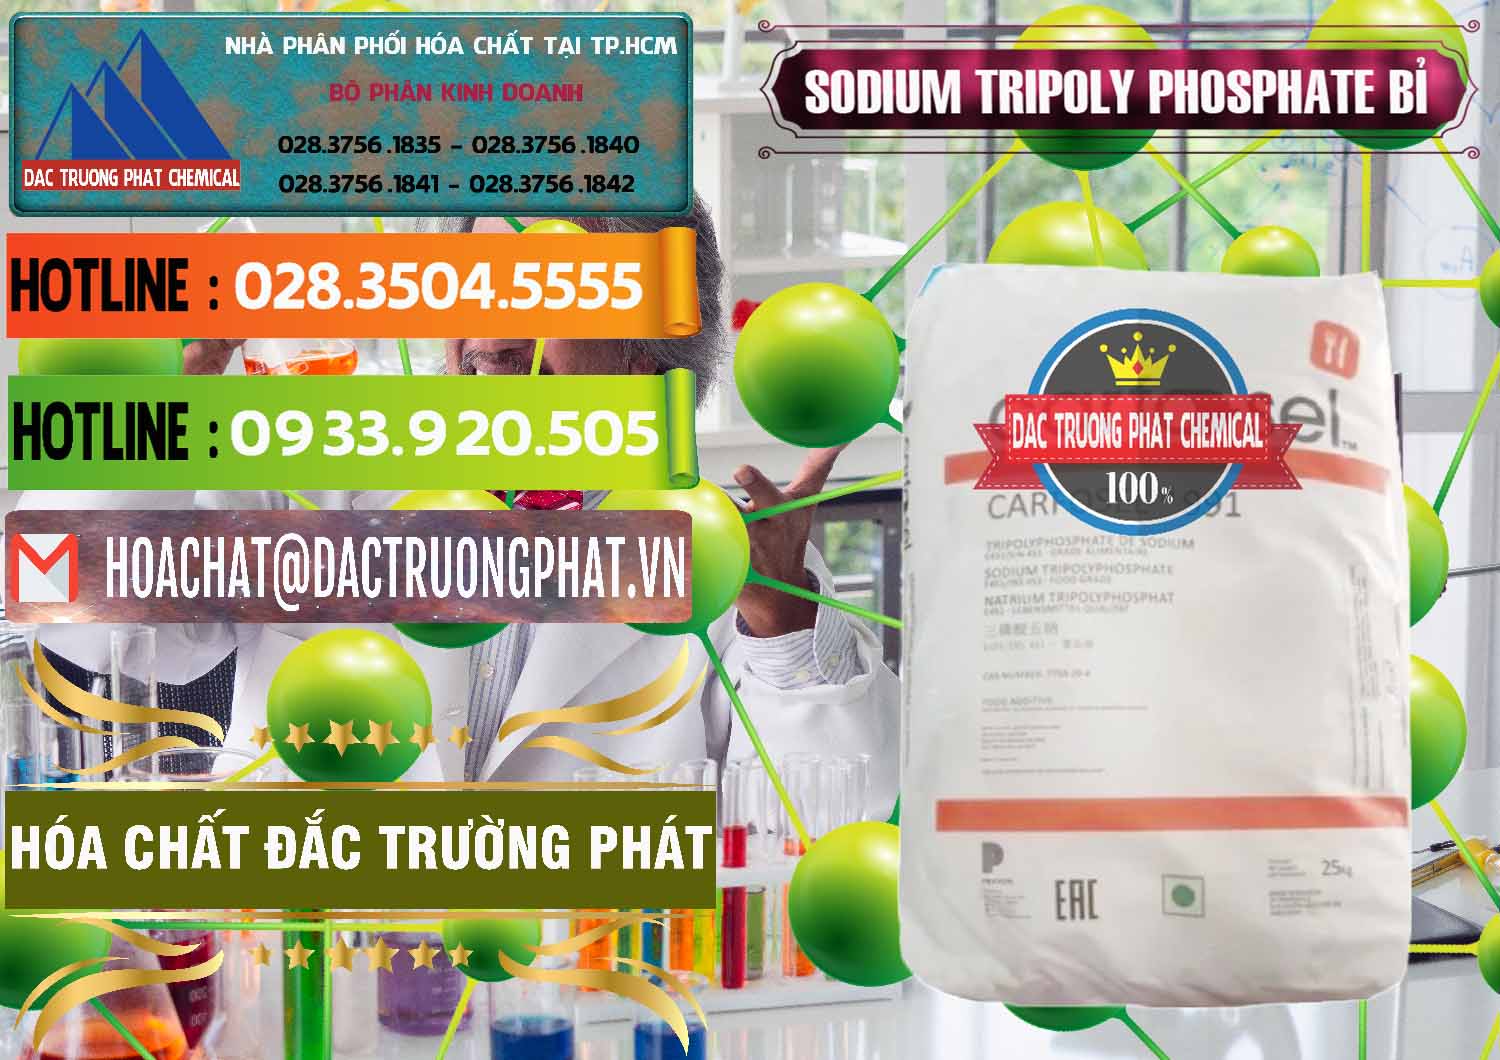 Đơn vị chuyên bán & cung ứng Sodium Tripoly Phosphate - STPP Carfosel 991 Bỉ Belgium - 0429 - Đơn vị chuyên nhập khẩu - phân phối hóa chất tại TP.HCM - cungcaphoachat.com.vn